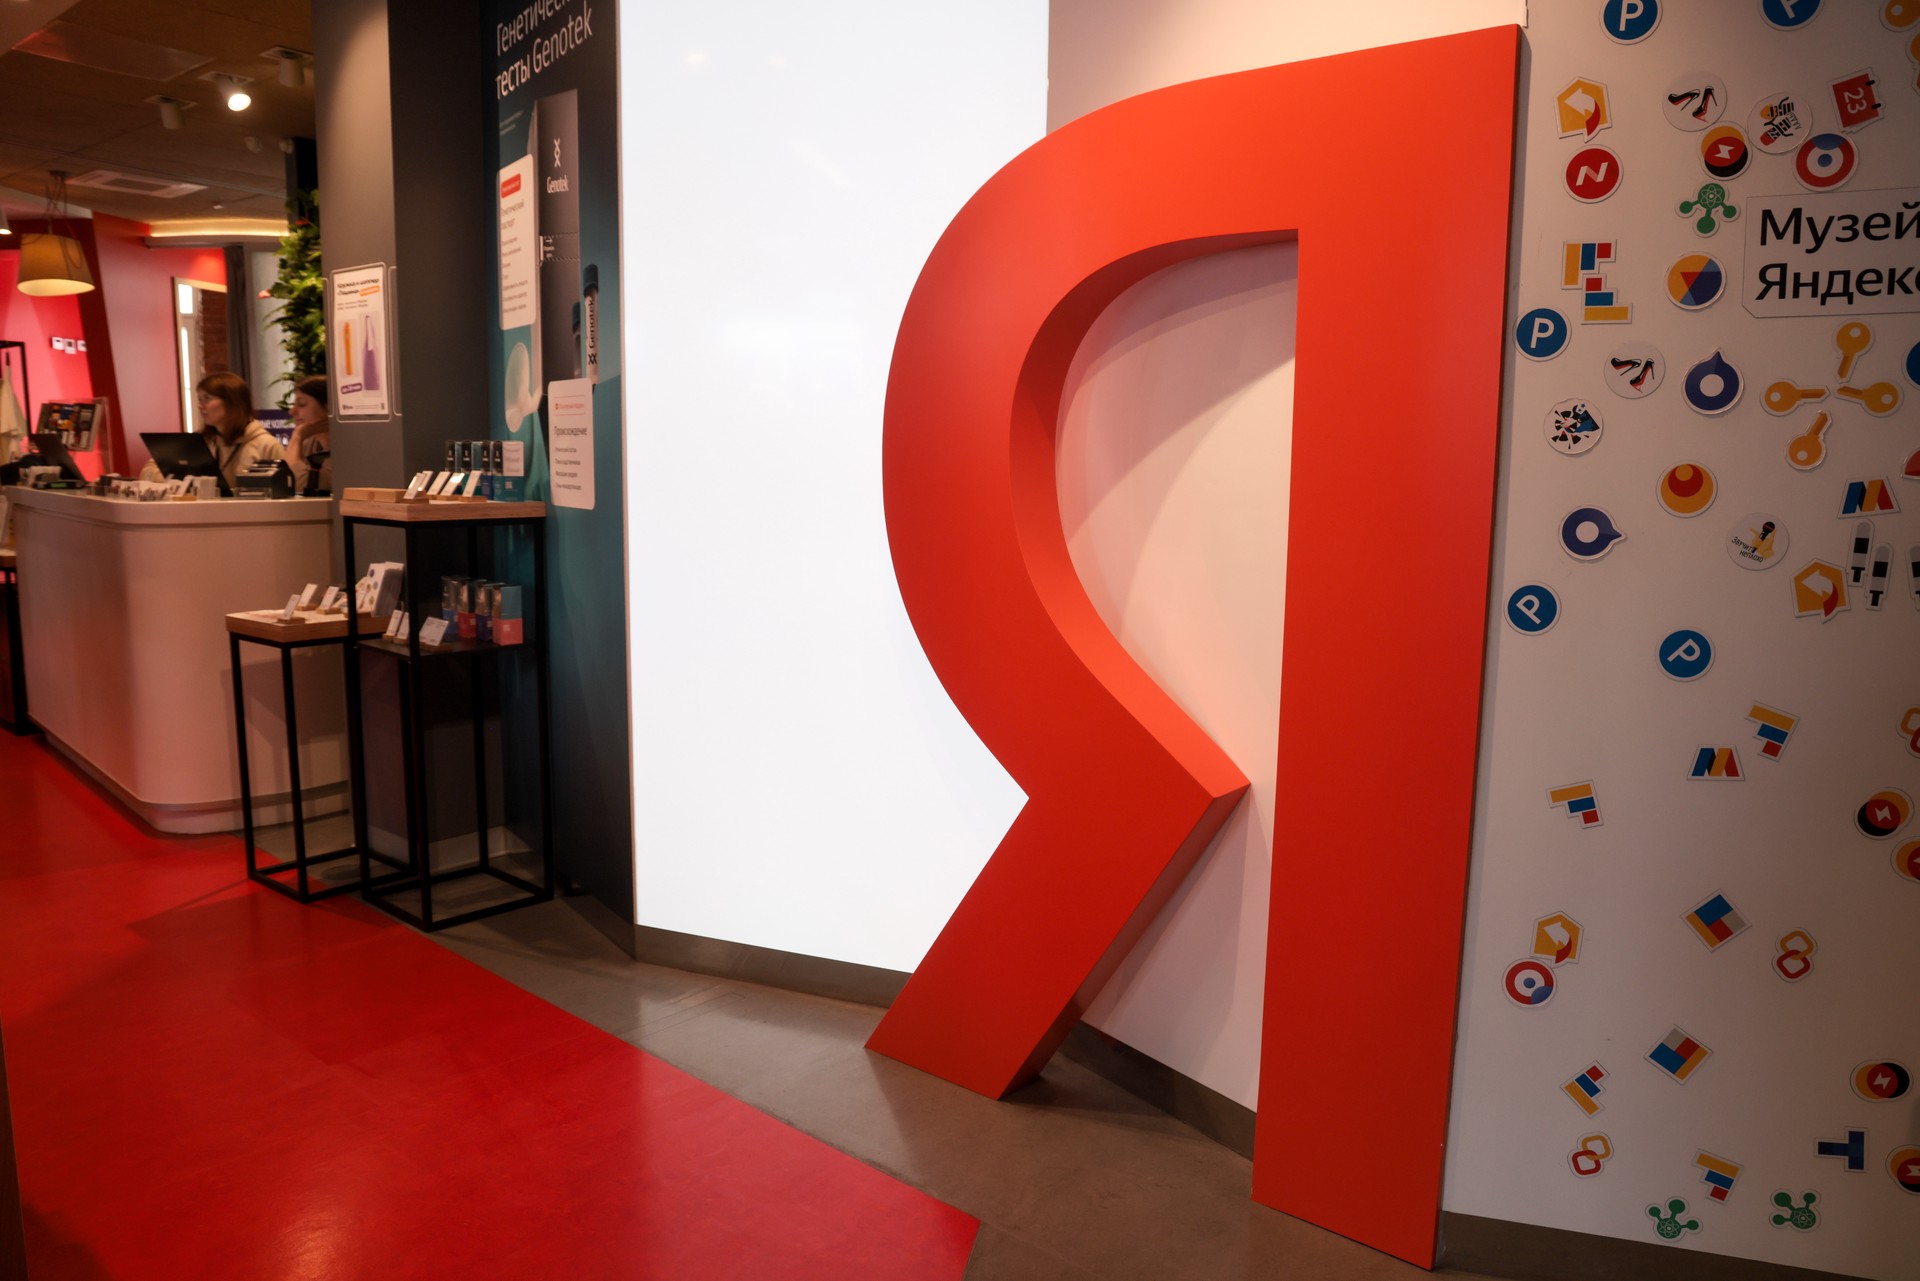 «Яндекс» меняет прописку: что известно о новых владельцах